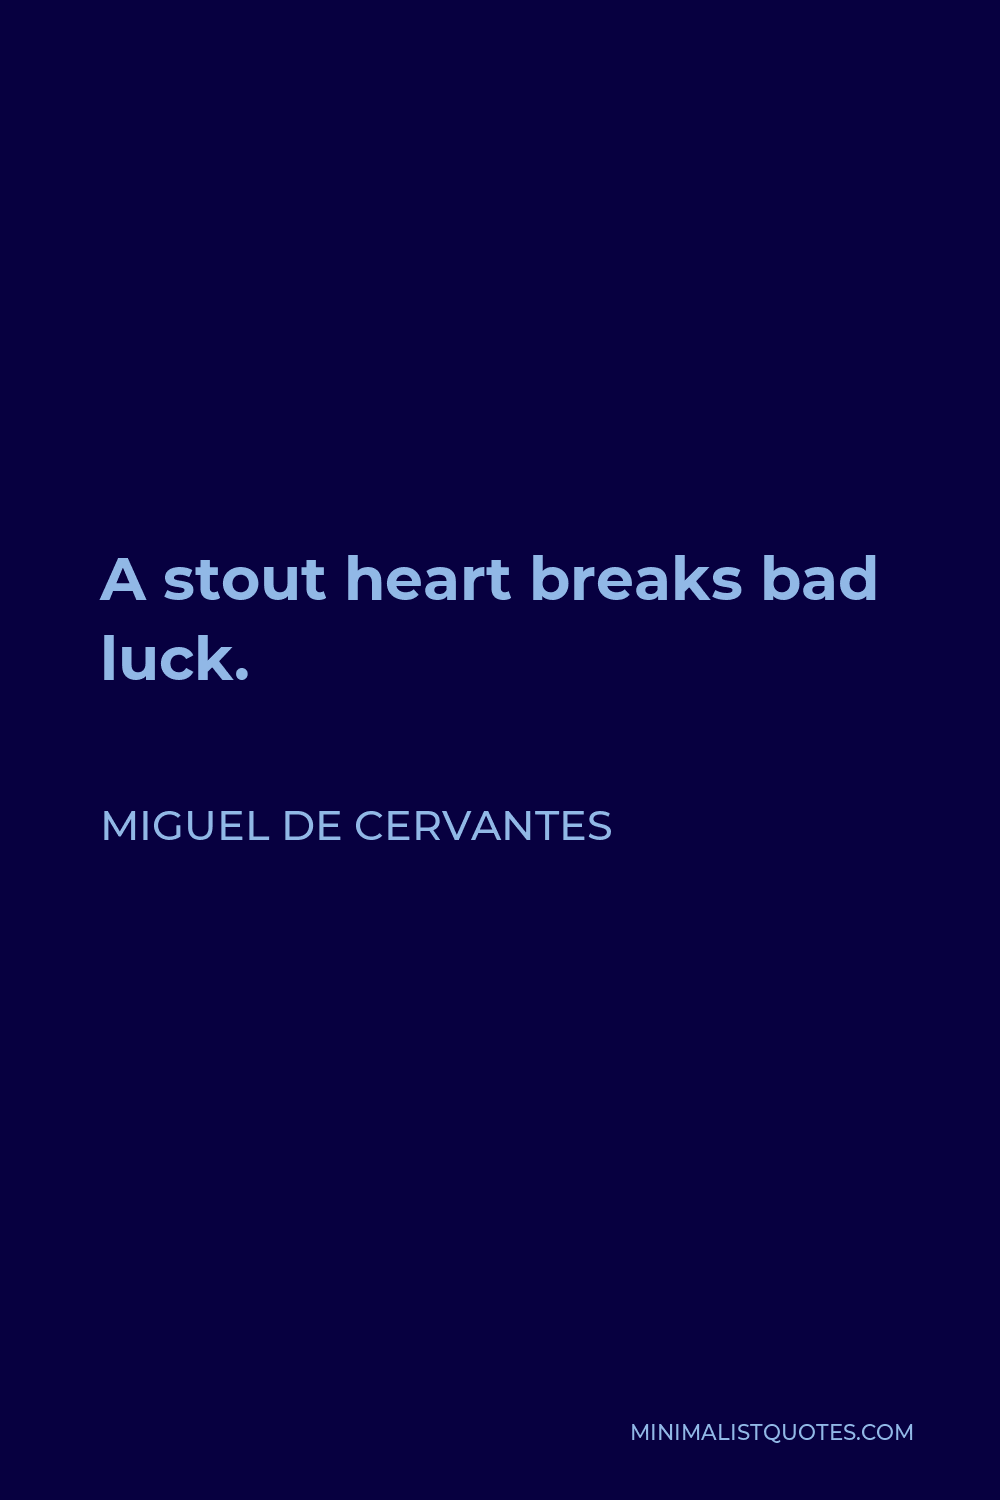 Miguel de Cervantes Quote - A stout heart breaks bad luck.